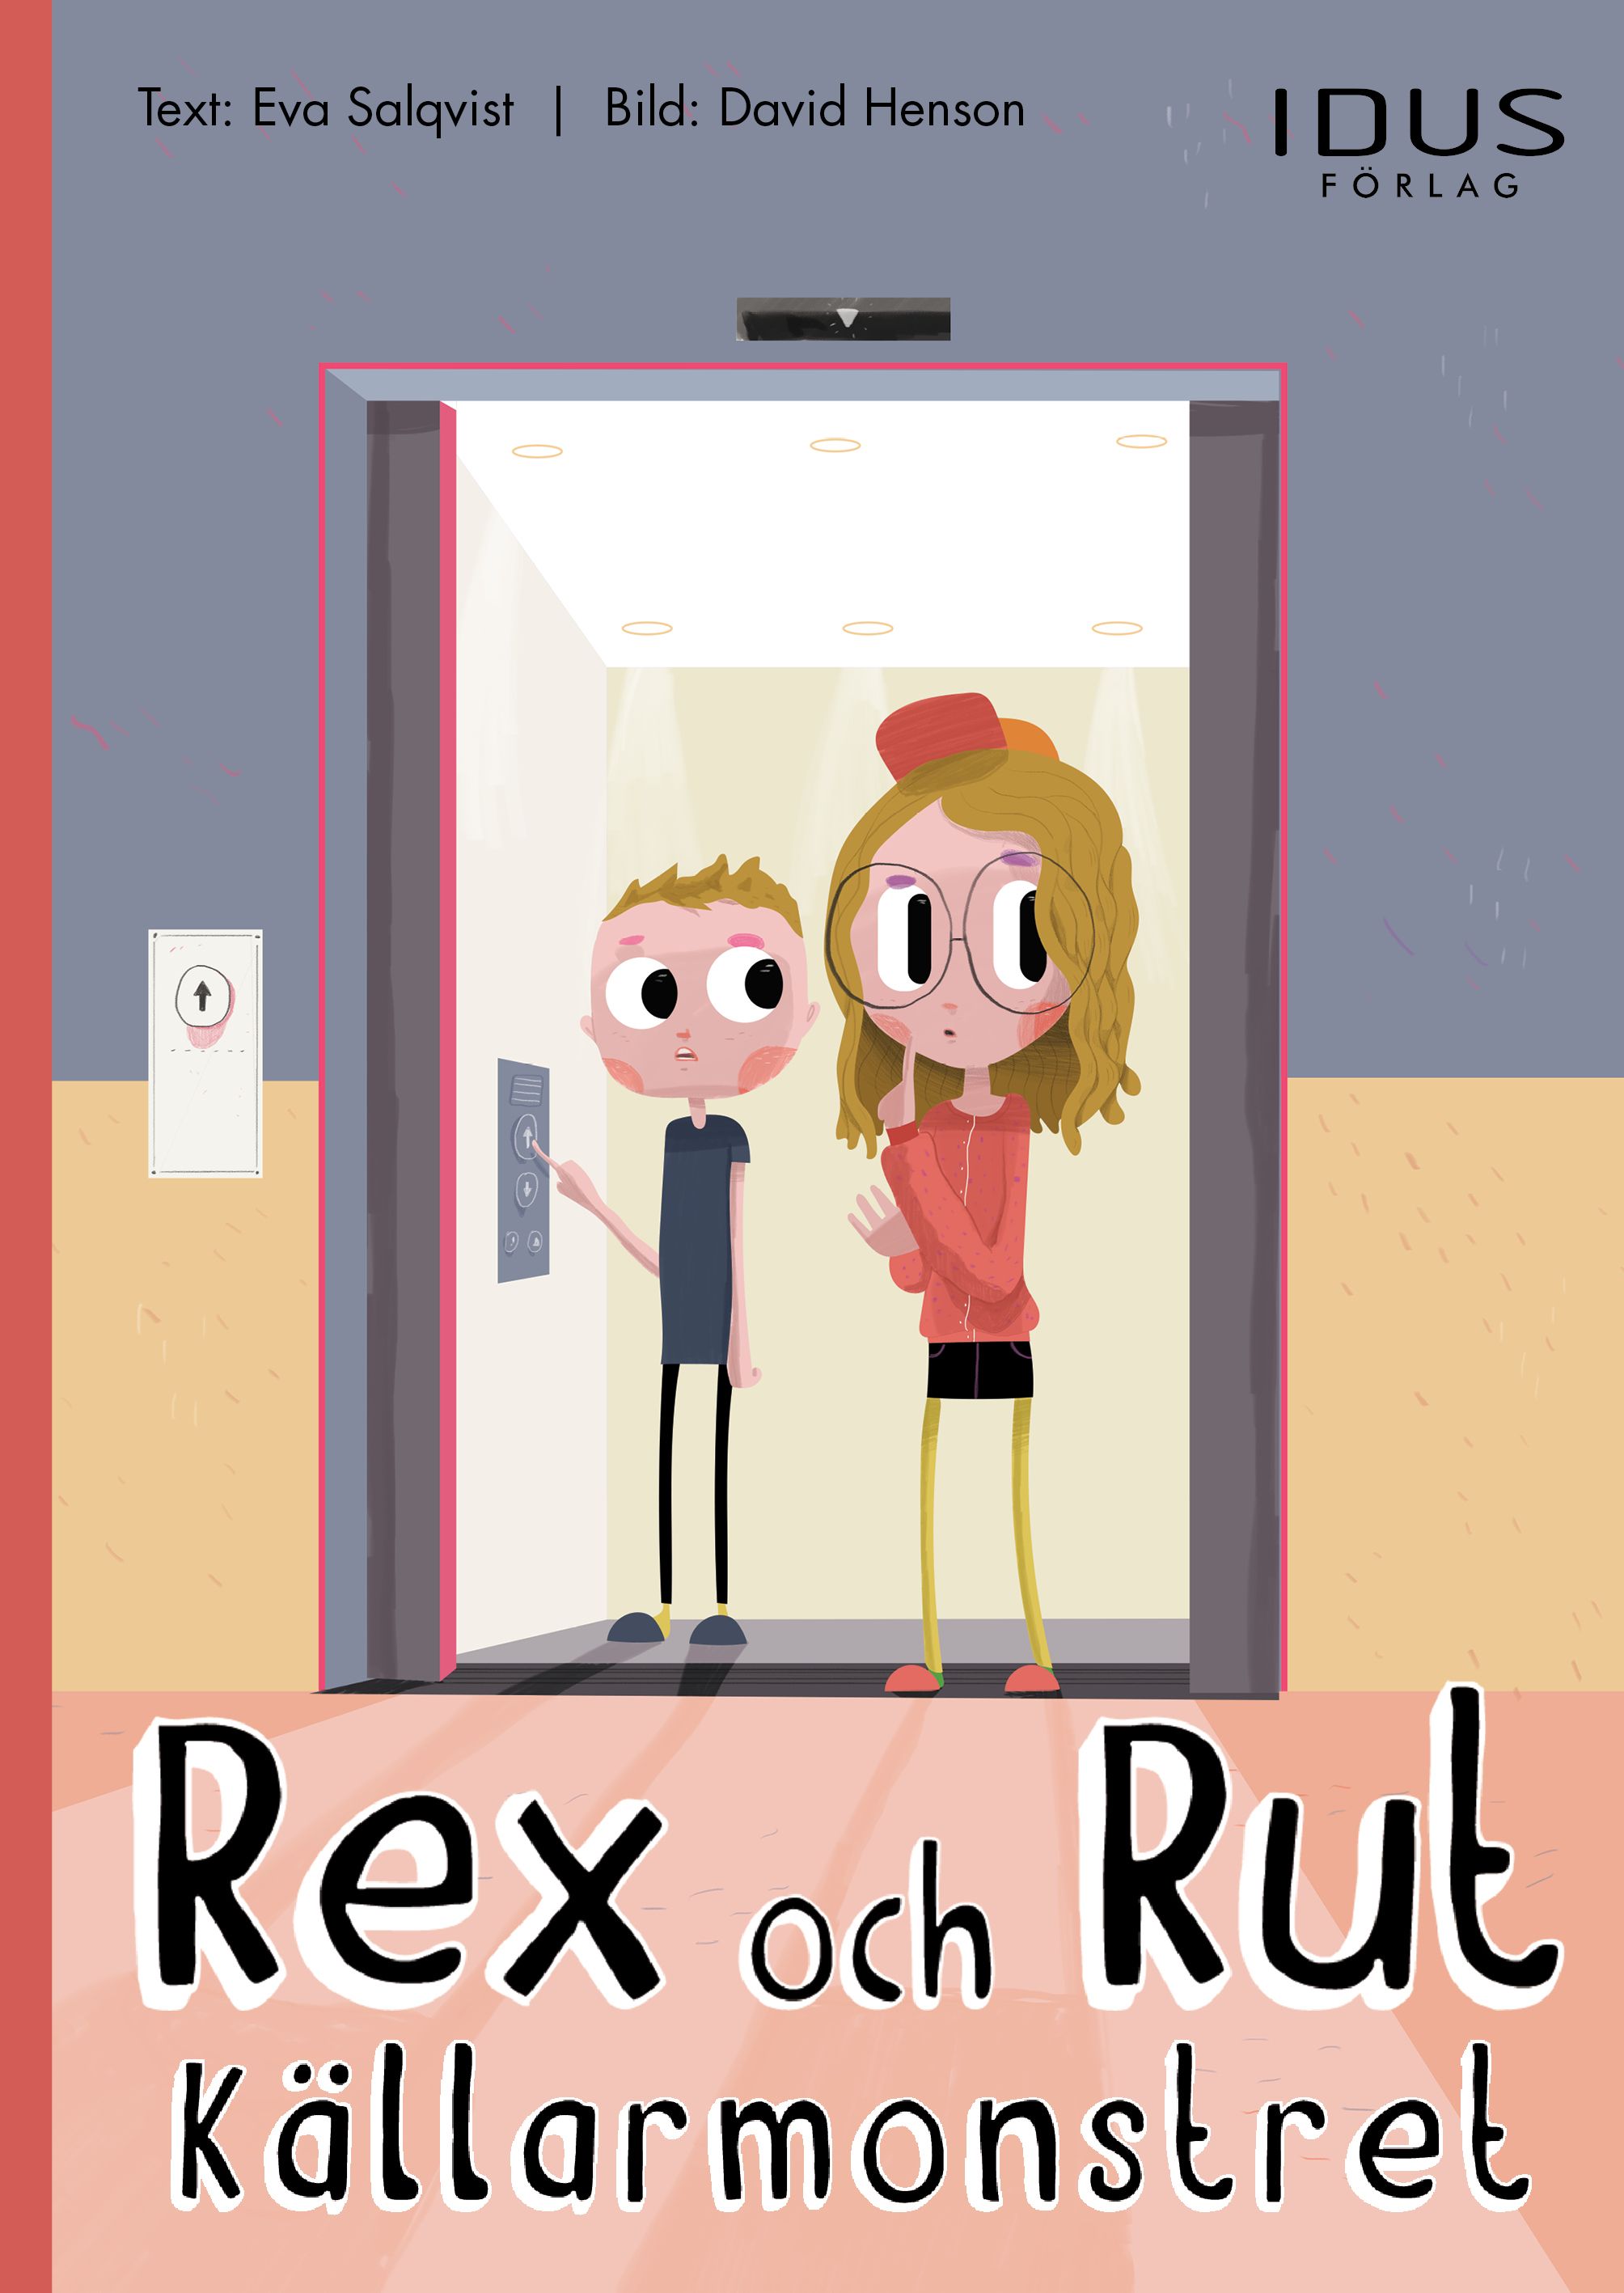 Rex och Rut. Källarmonstret, eBook by Eva Salqvist